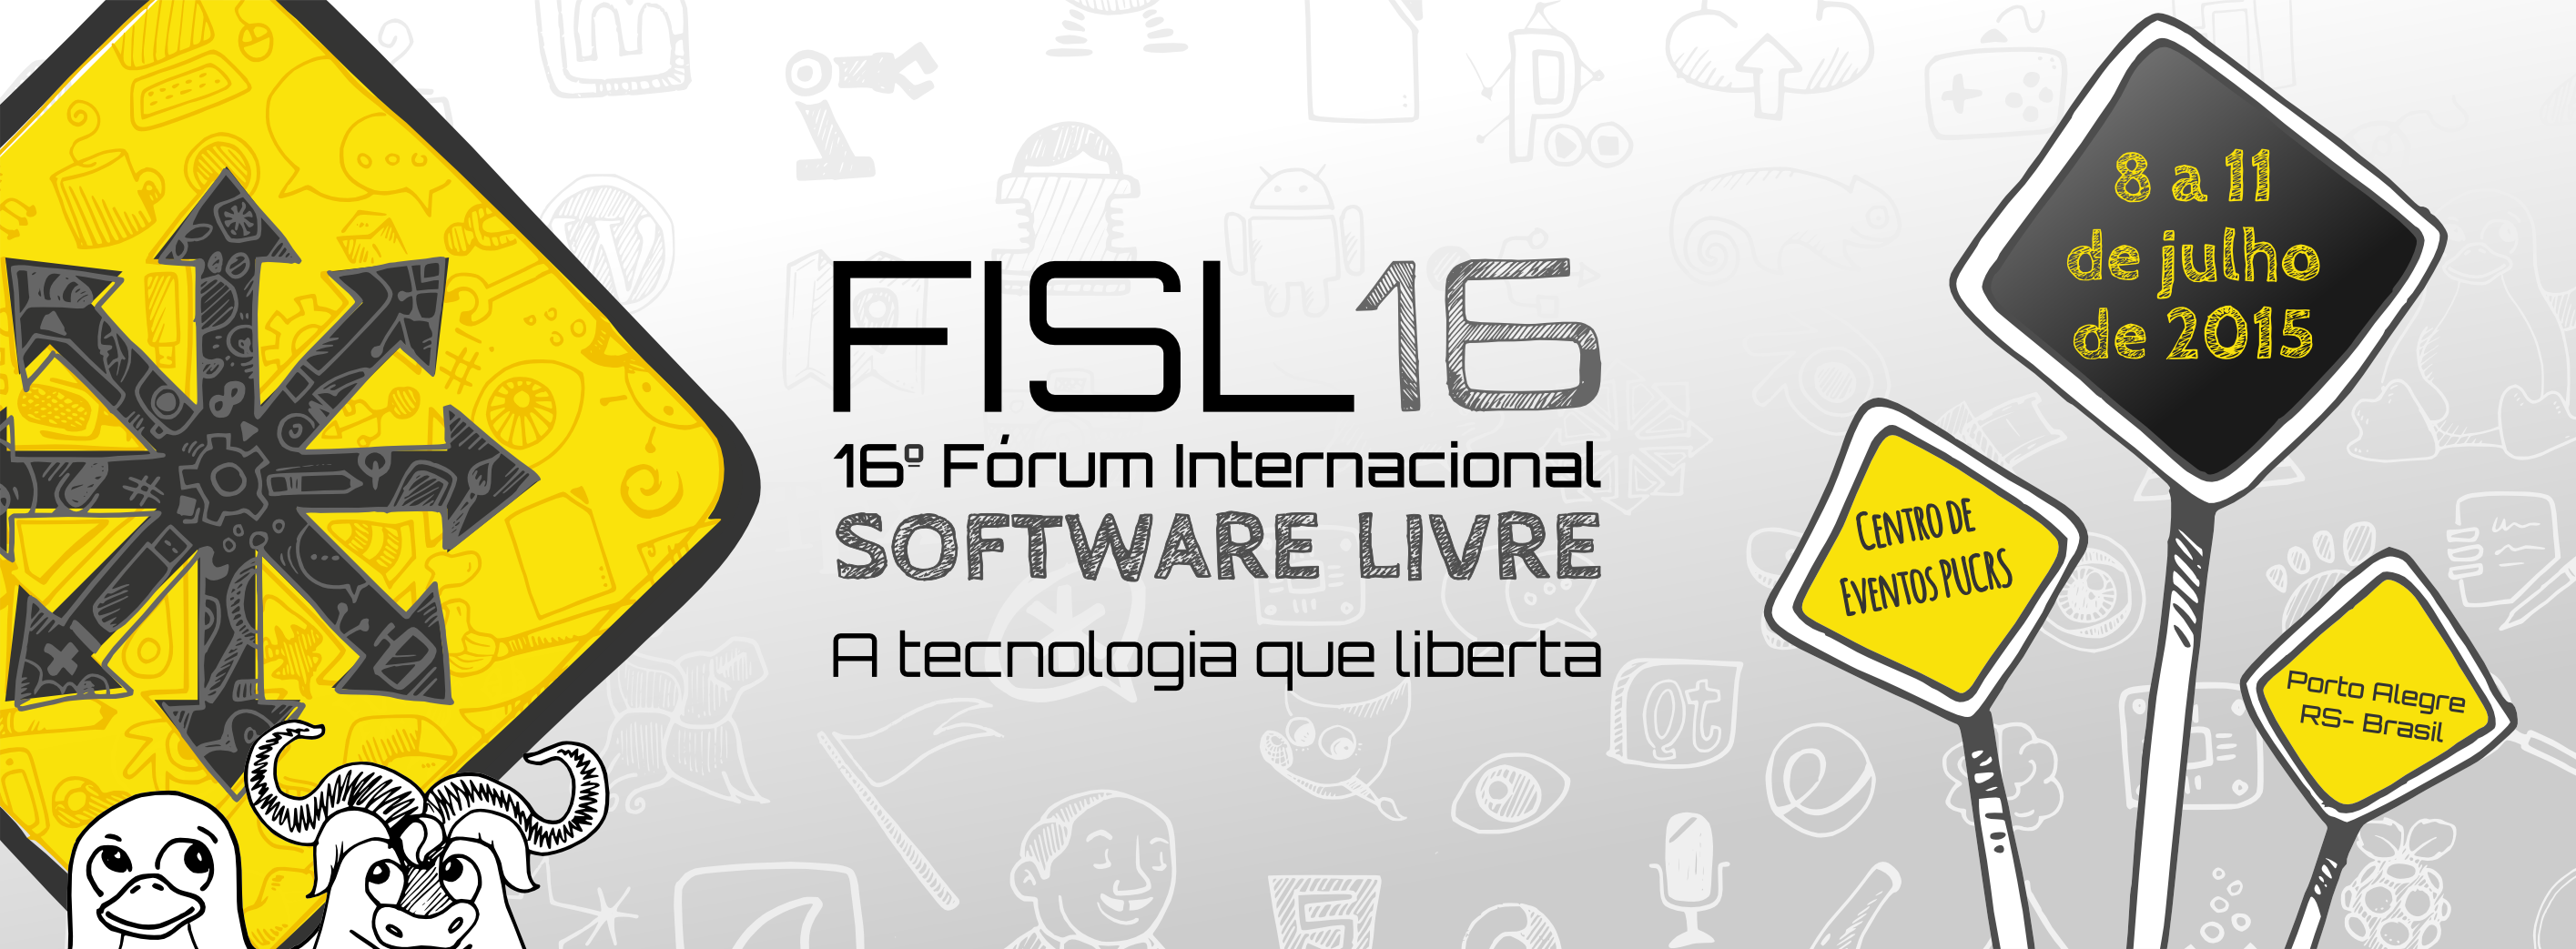 fisl-1